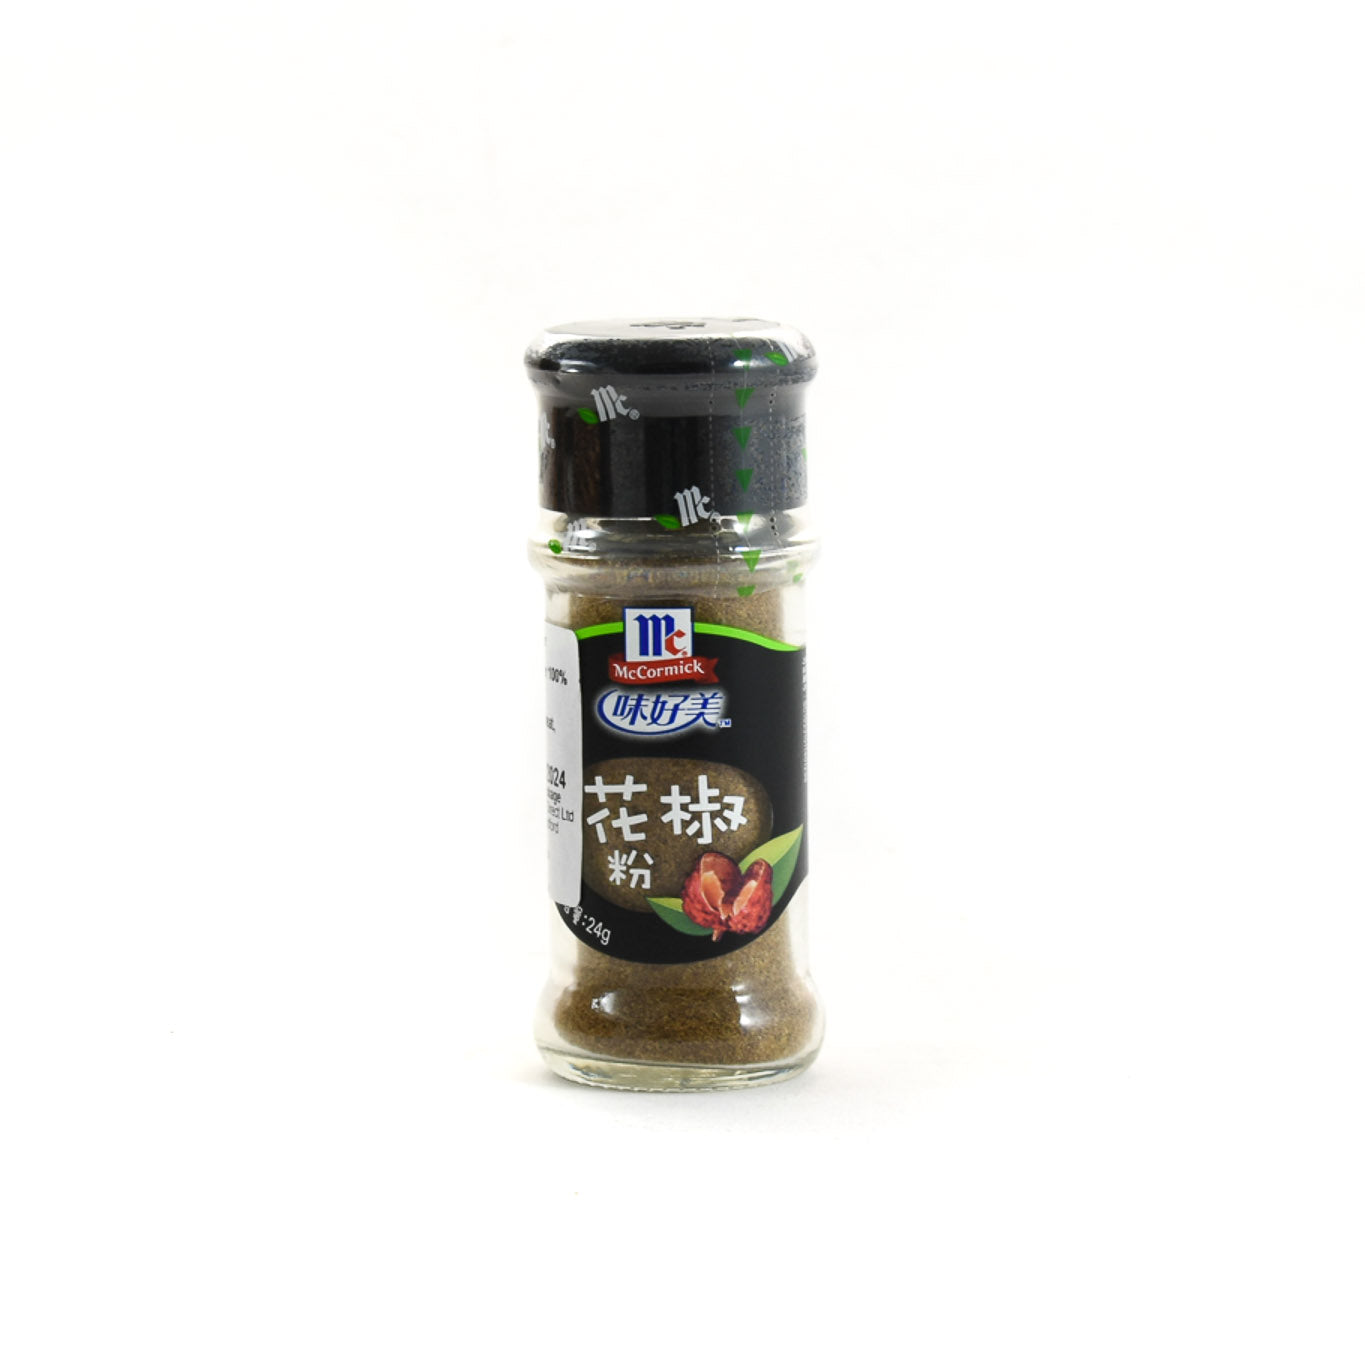 Sichuan Pepper Powder 24g